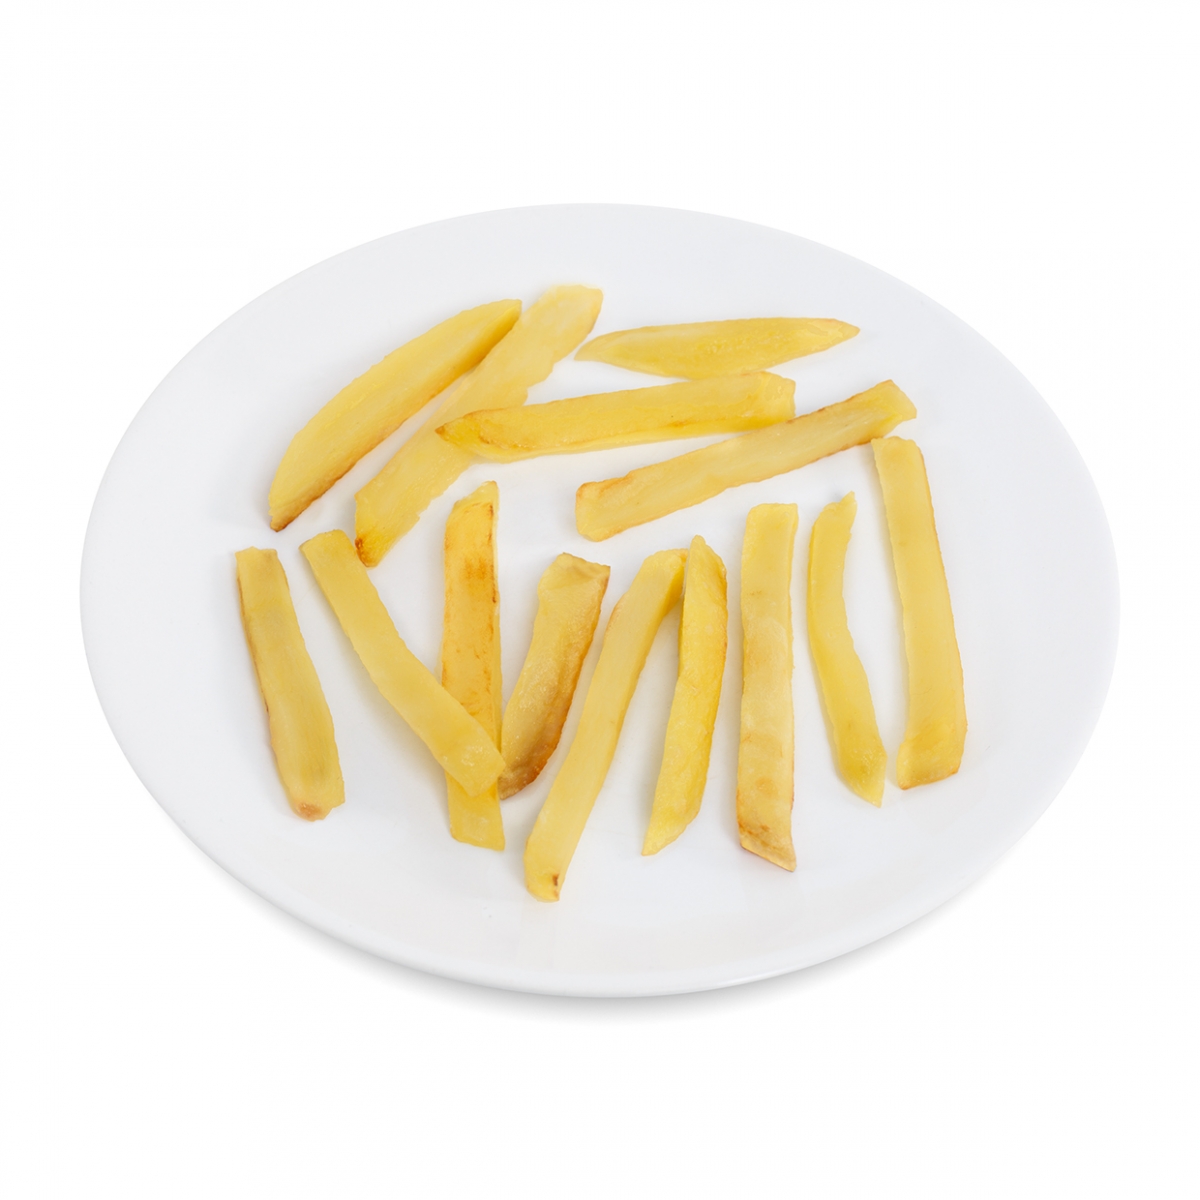 Imagen en la que se ve un plato de patatas fritas